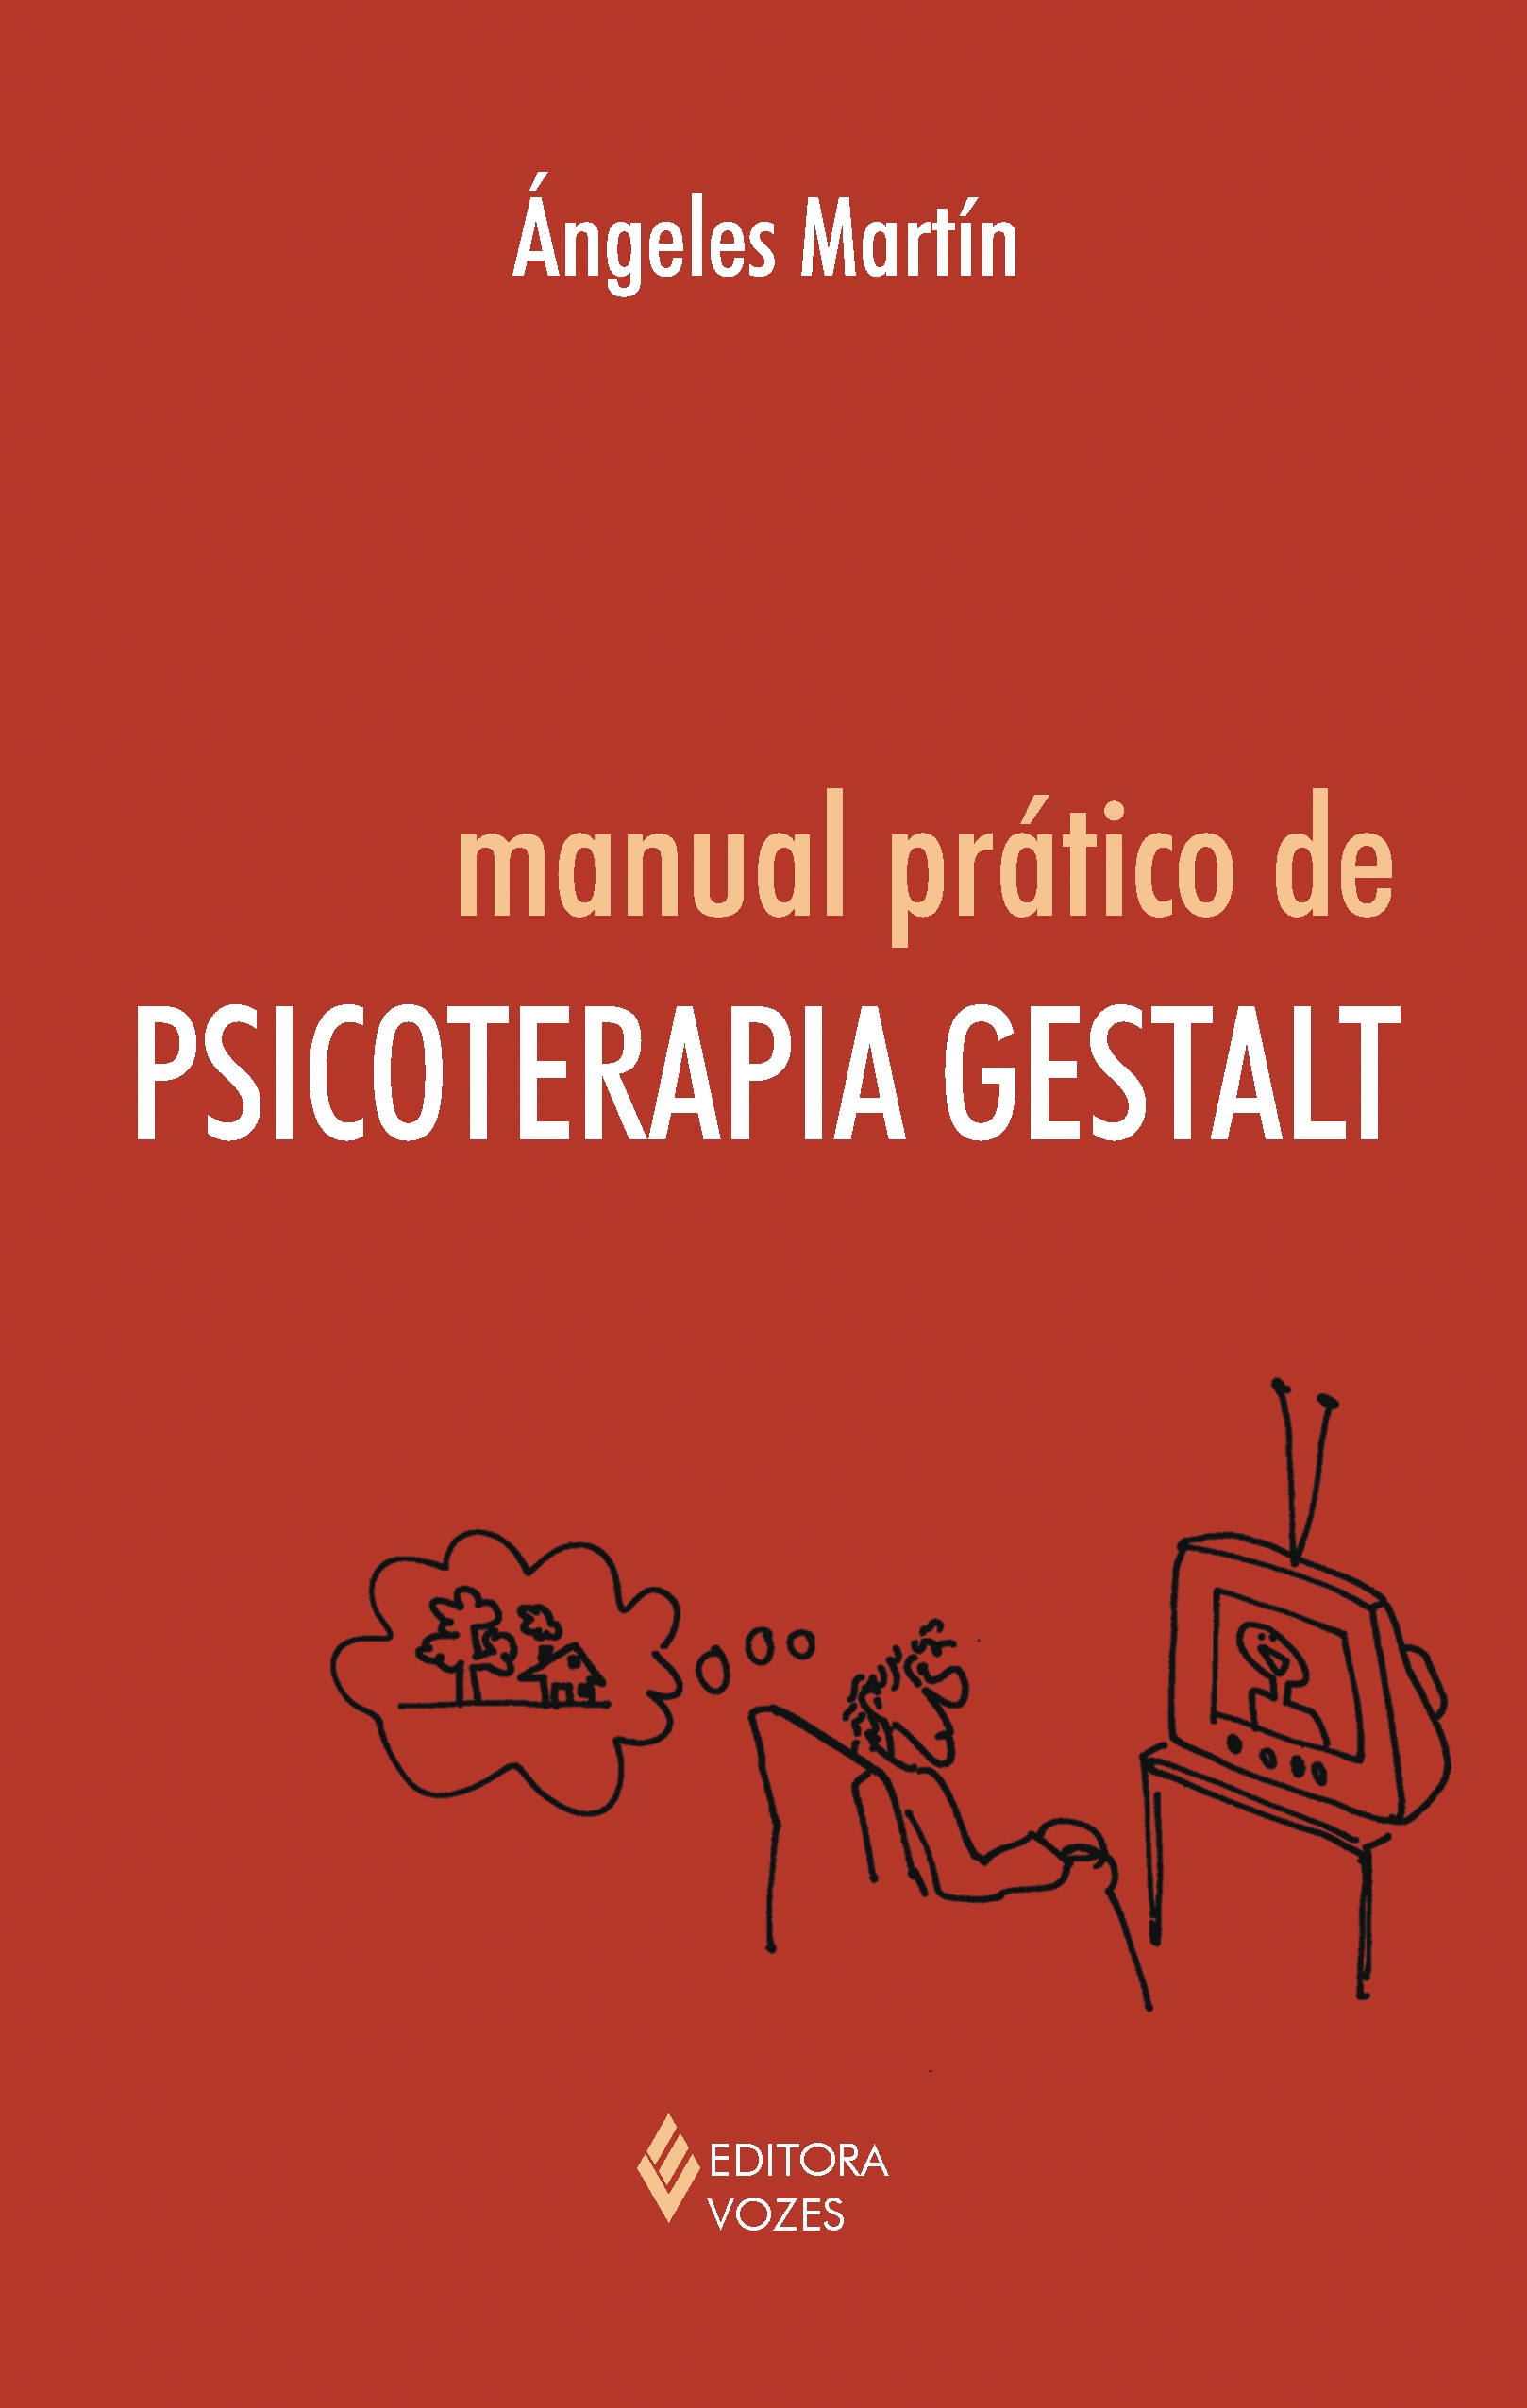 MANUAL PRATICO DE PSICOTERAPIA GESTALT